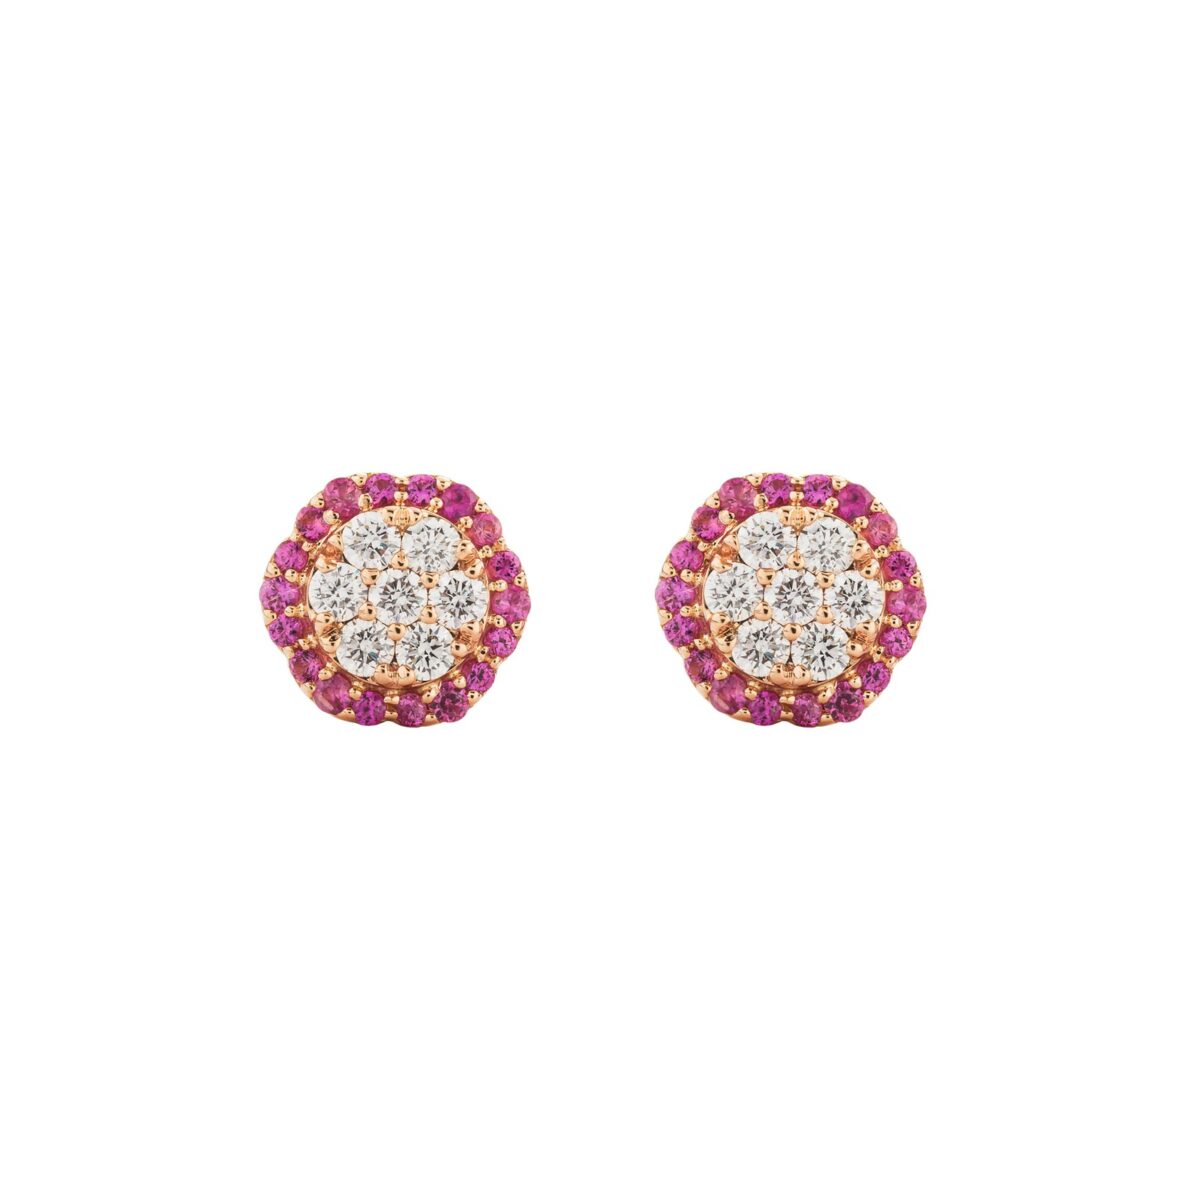 Orecchini Donna Buonocore Gioielli Esagonale In Oro Rosa Diamanti Bianchi Zirconi Rosa